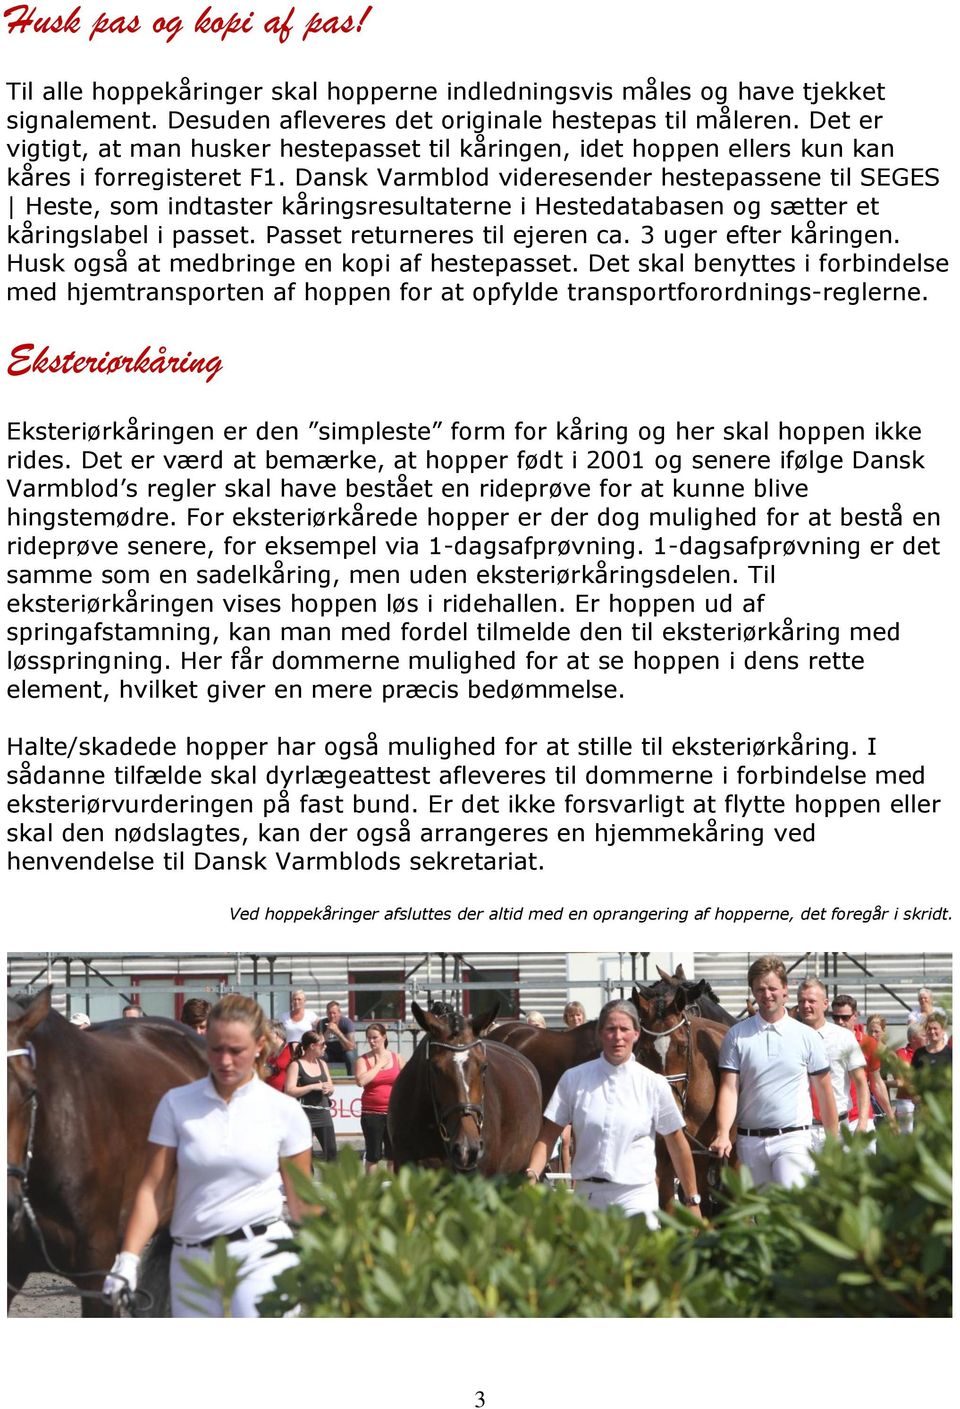 Dansk Varmblod videresender hestepassene til SEGES Heste, som indtaster kåringsresultaterne i Hestedatabasen og sætter et kåringslabel i passet. Passet returneres til ejeren ca. 3 uger efter kåringen.